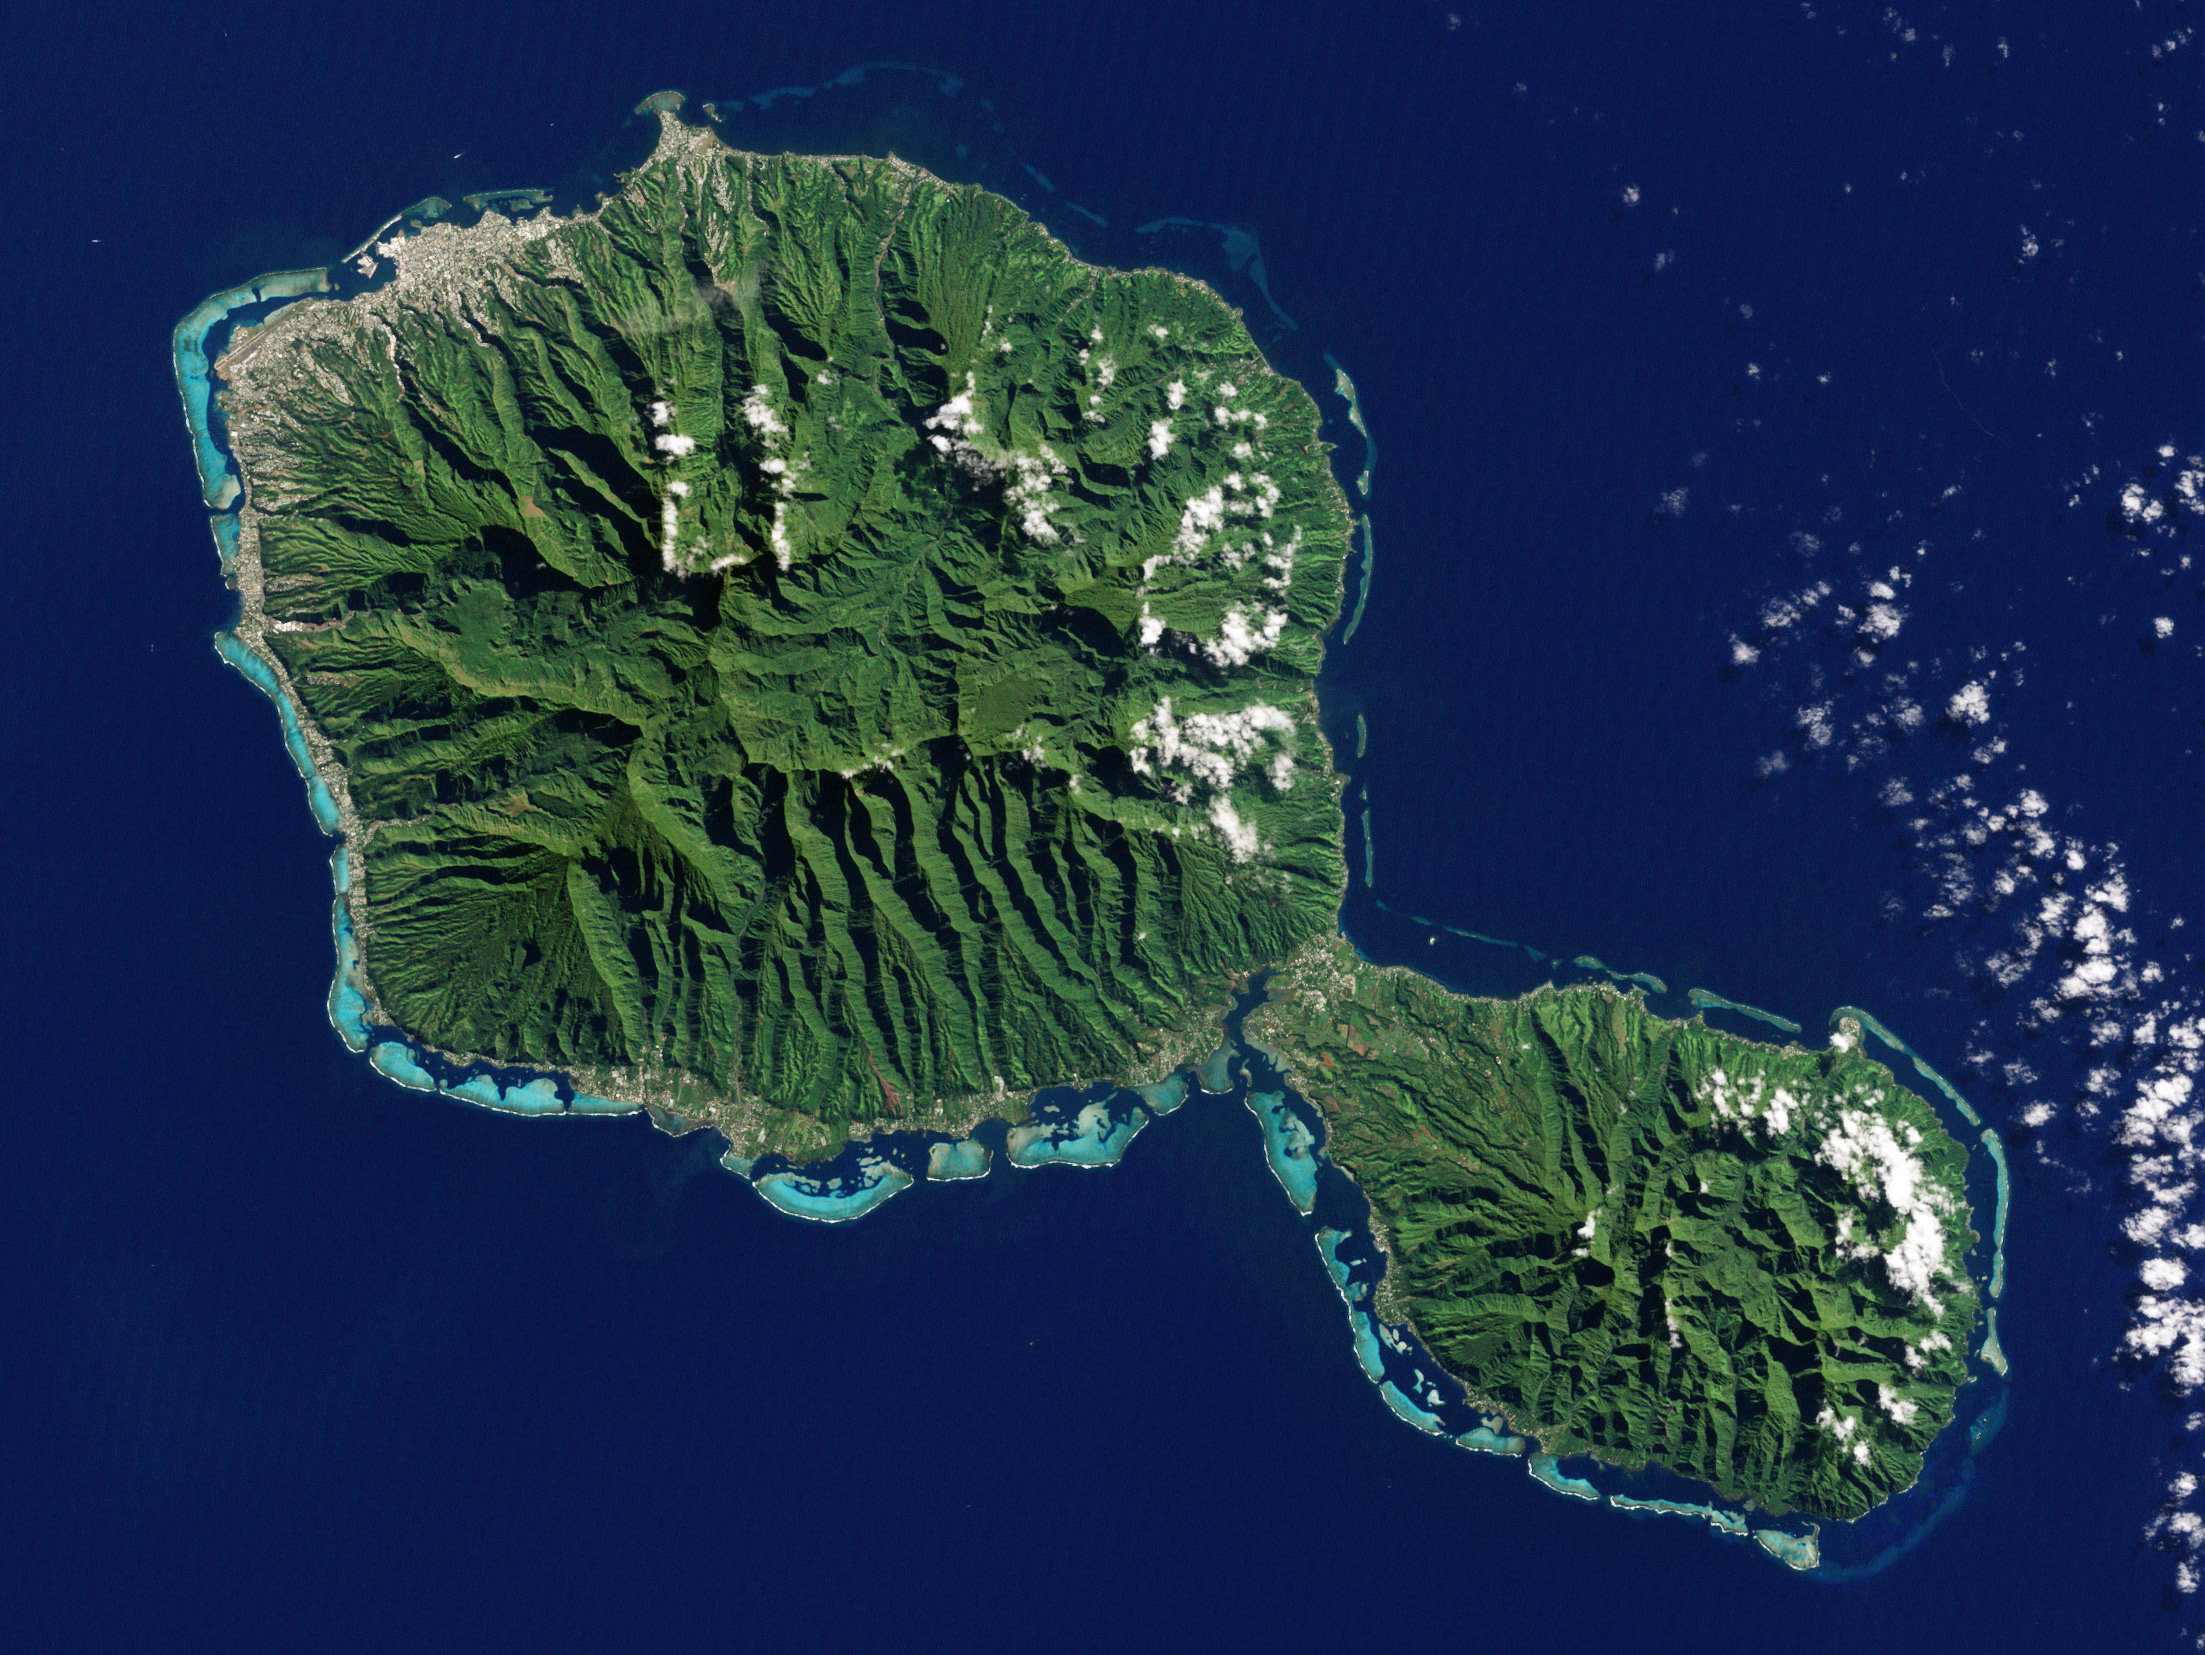 Tahiti Etm 2001192 Lrg 